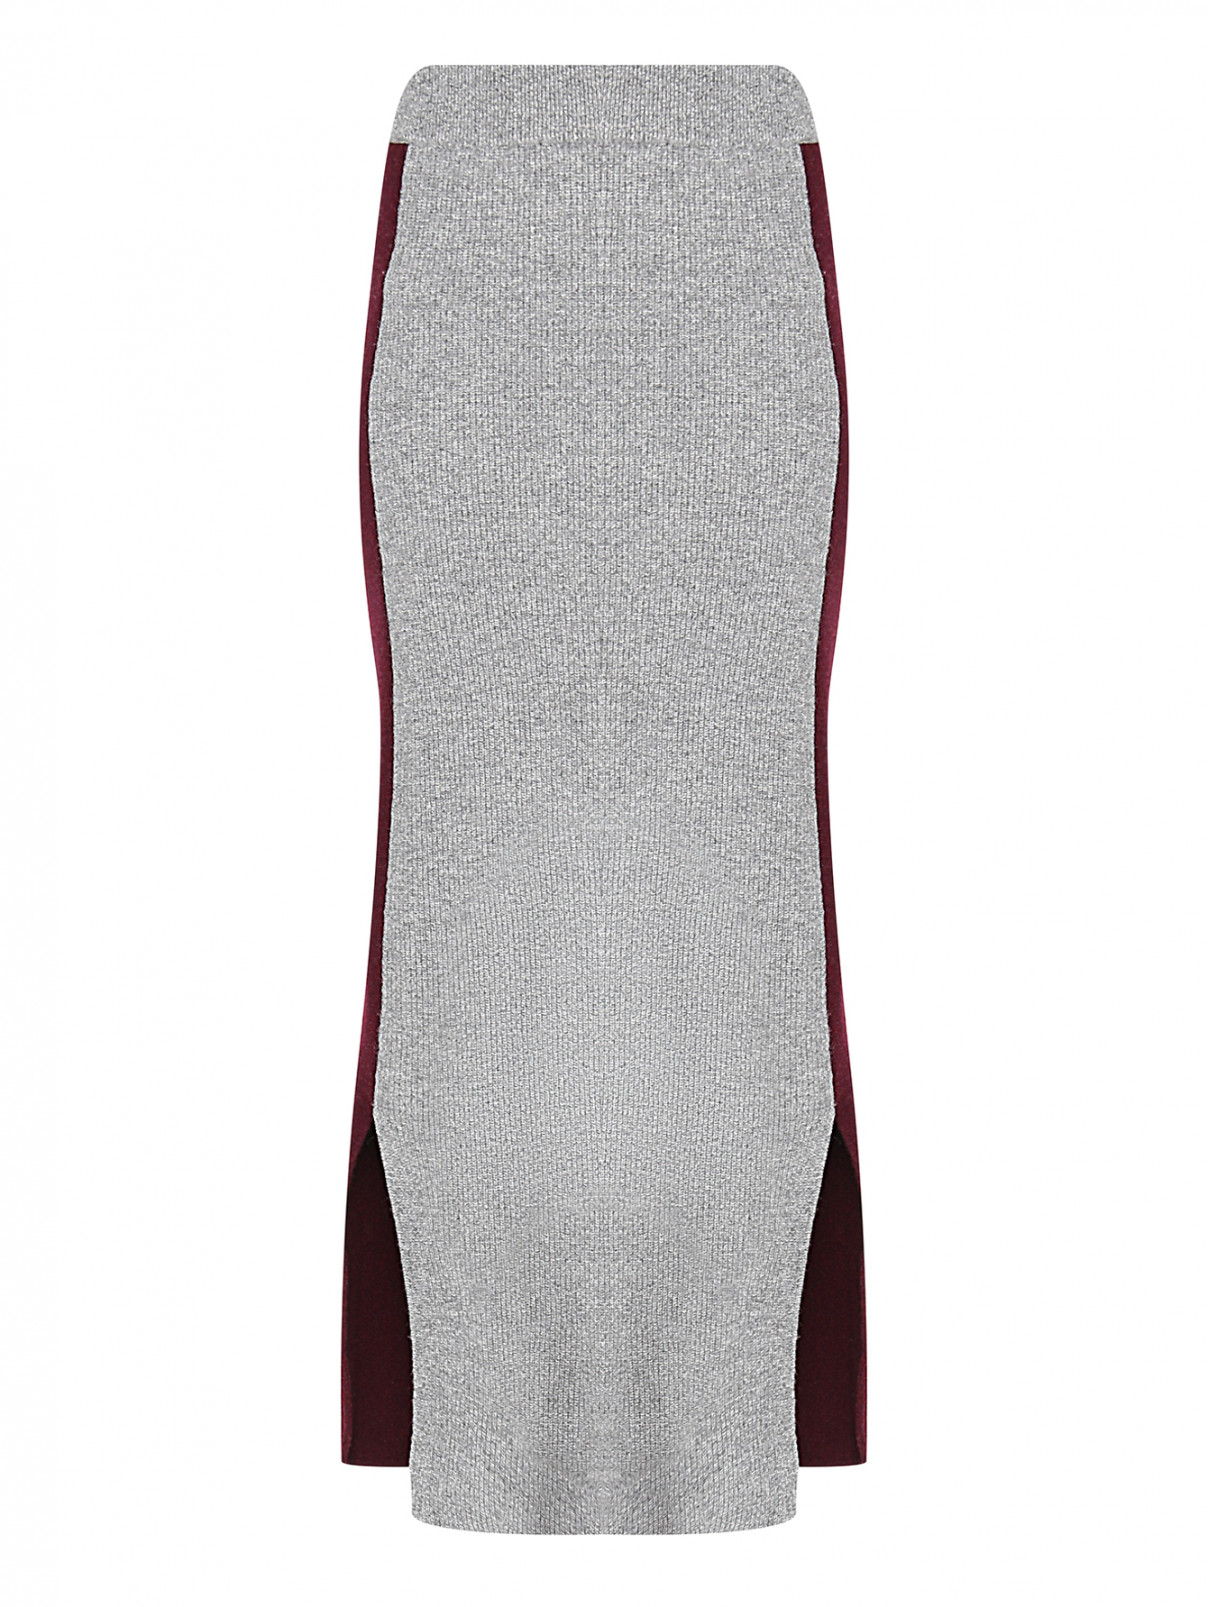 Трикотажная юбка с разрезами Brown Allan  –  Общий вид  – Цвет:  Серый